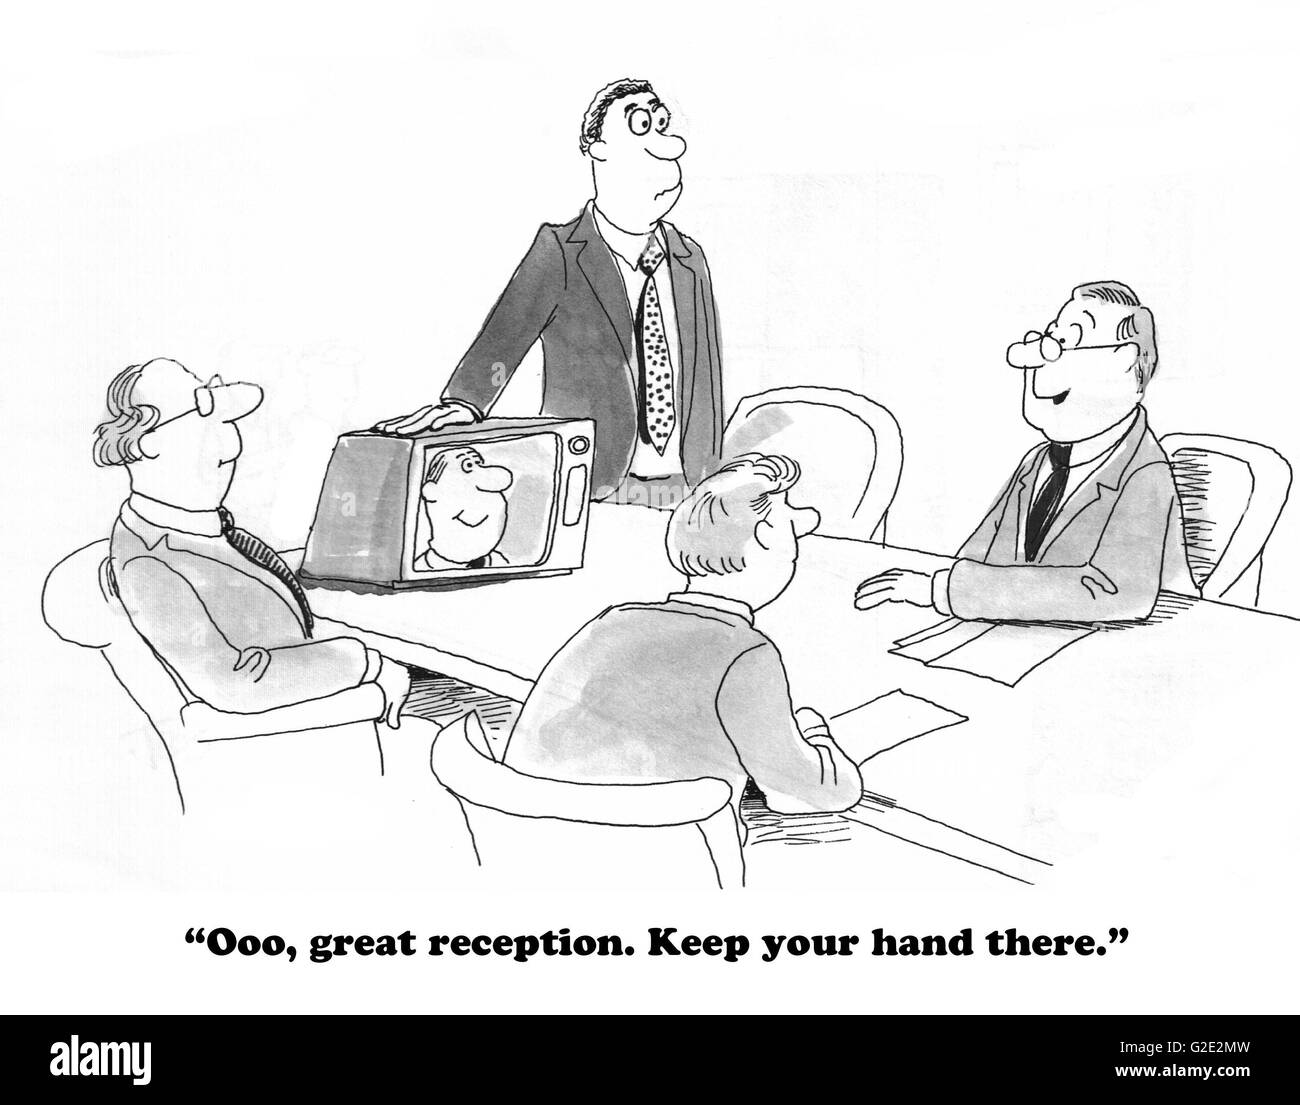 Business cartoon boss circa il trattamento di un collega come un flunky, chiedendogli di tenere la mano sul monitor per mantenere chiara la reception. Foto Stock